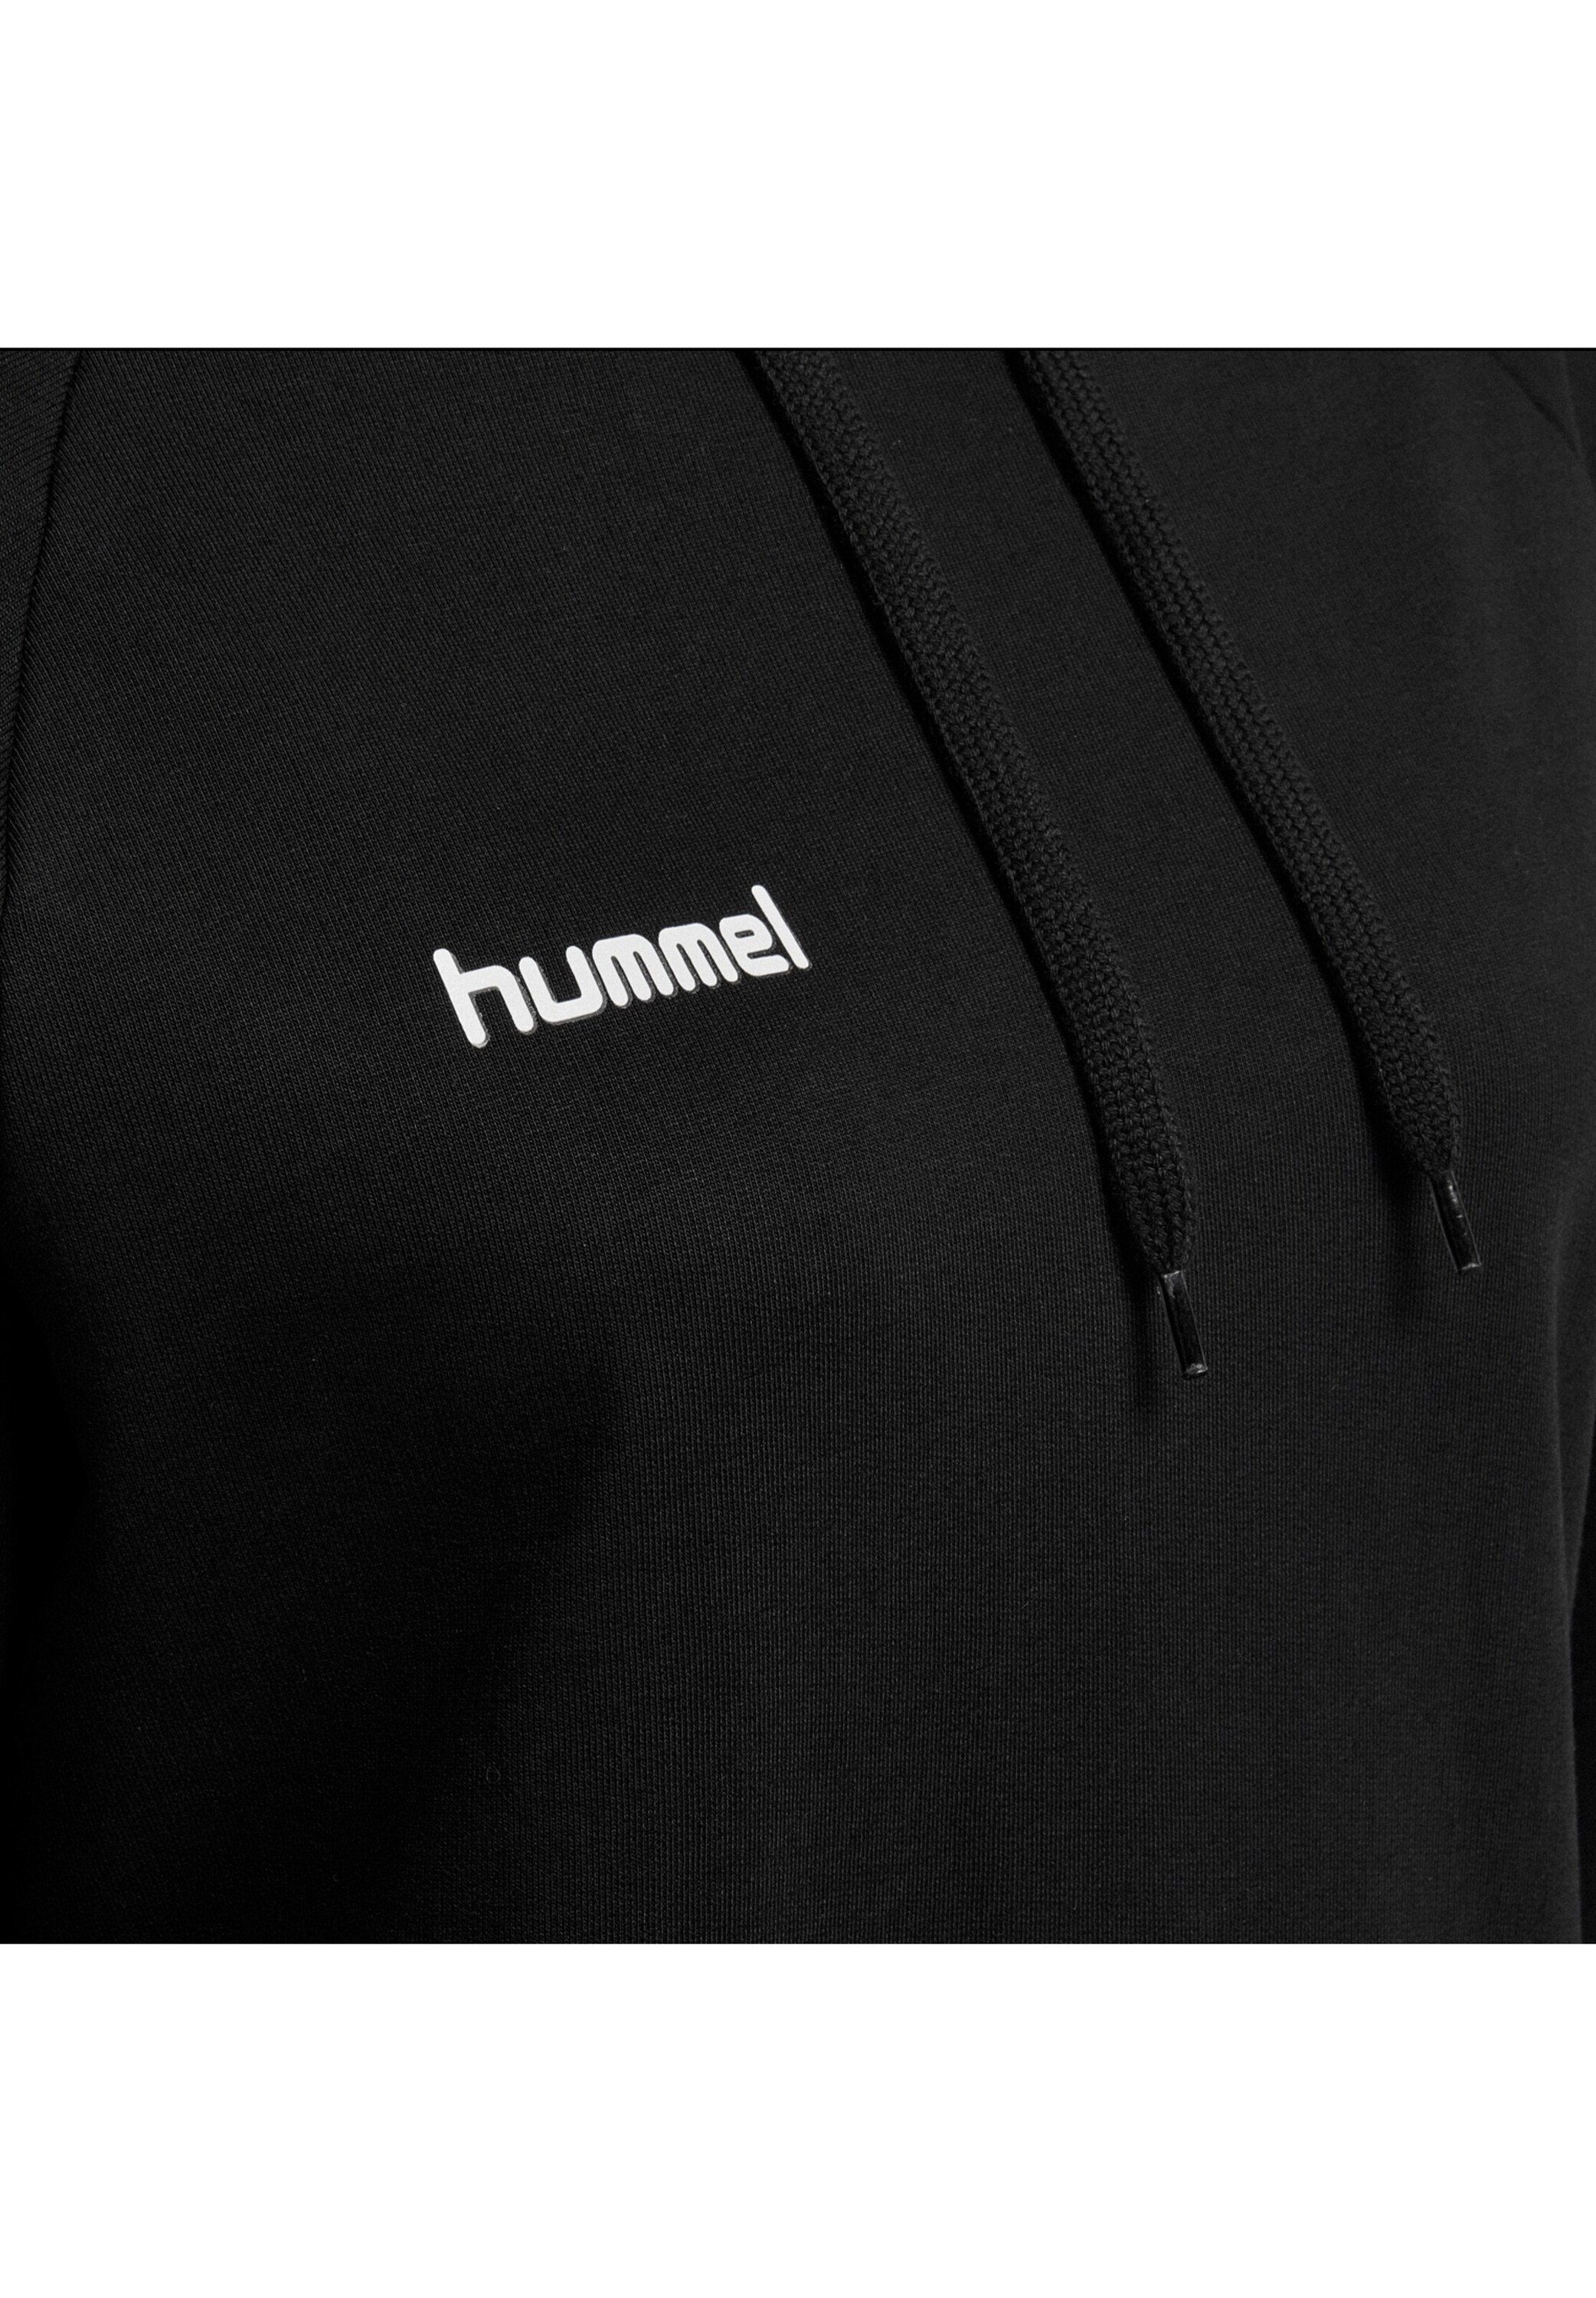 hummel Sweatshirt Plain/ohne Schwarz (1-tlg) Details